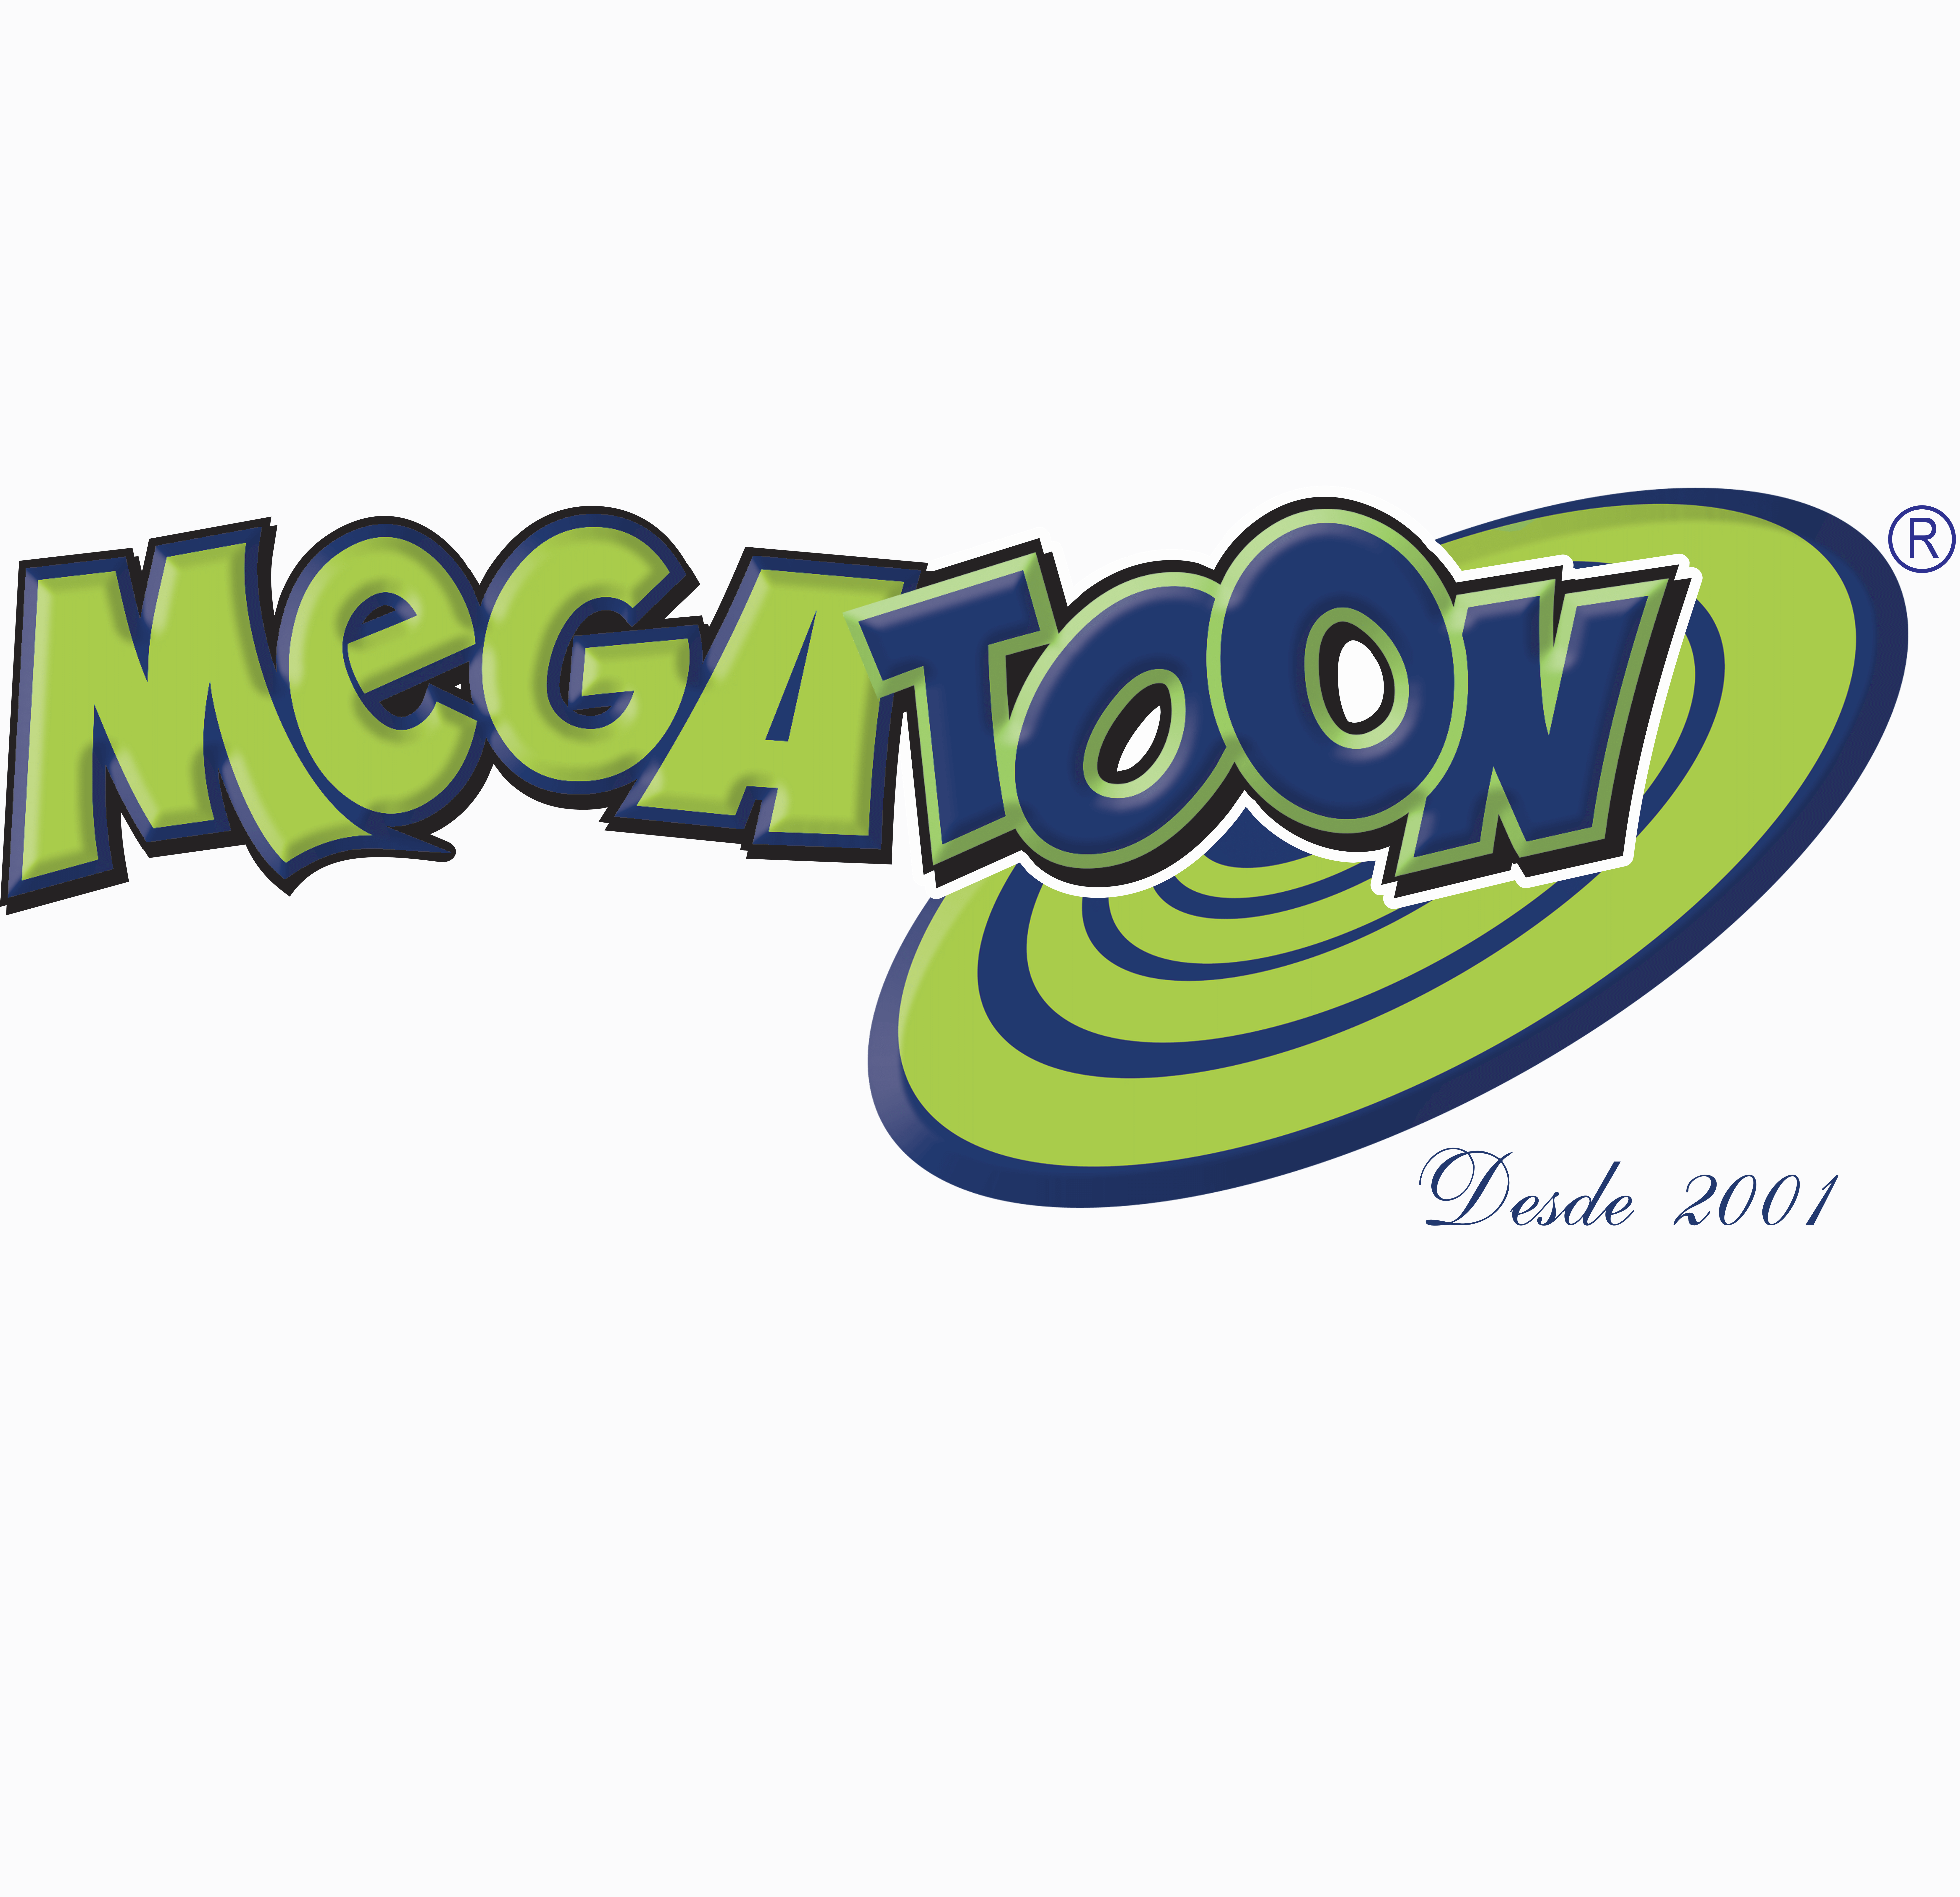 Megatoon